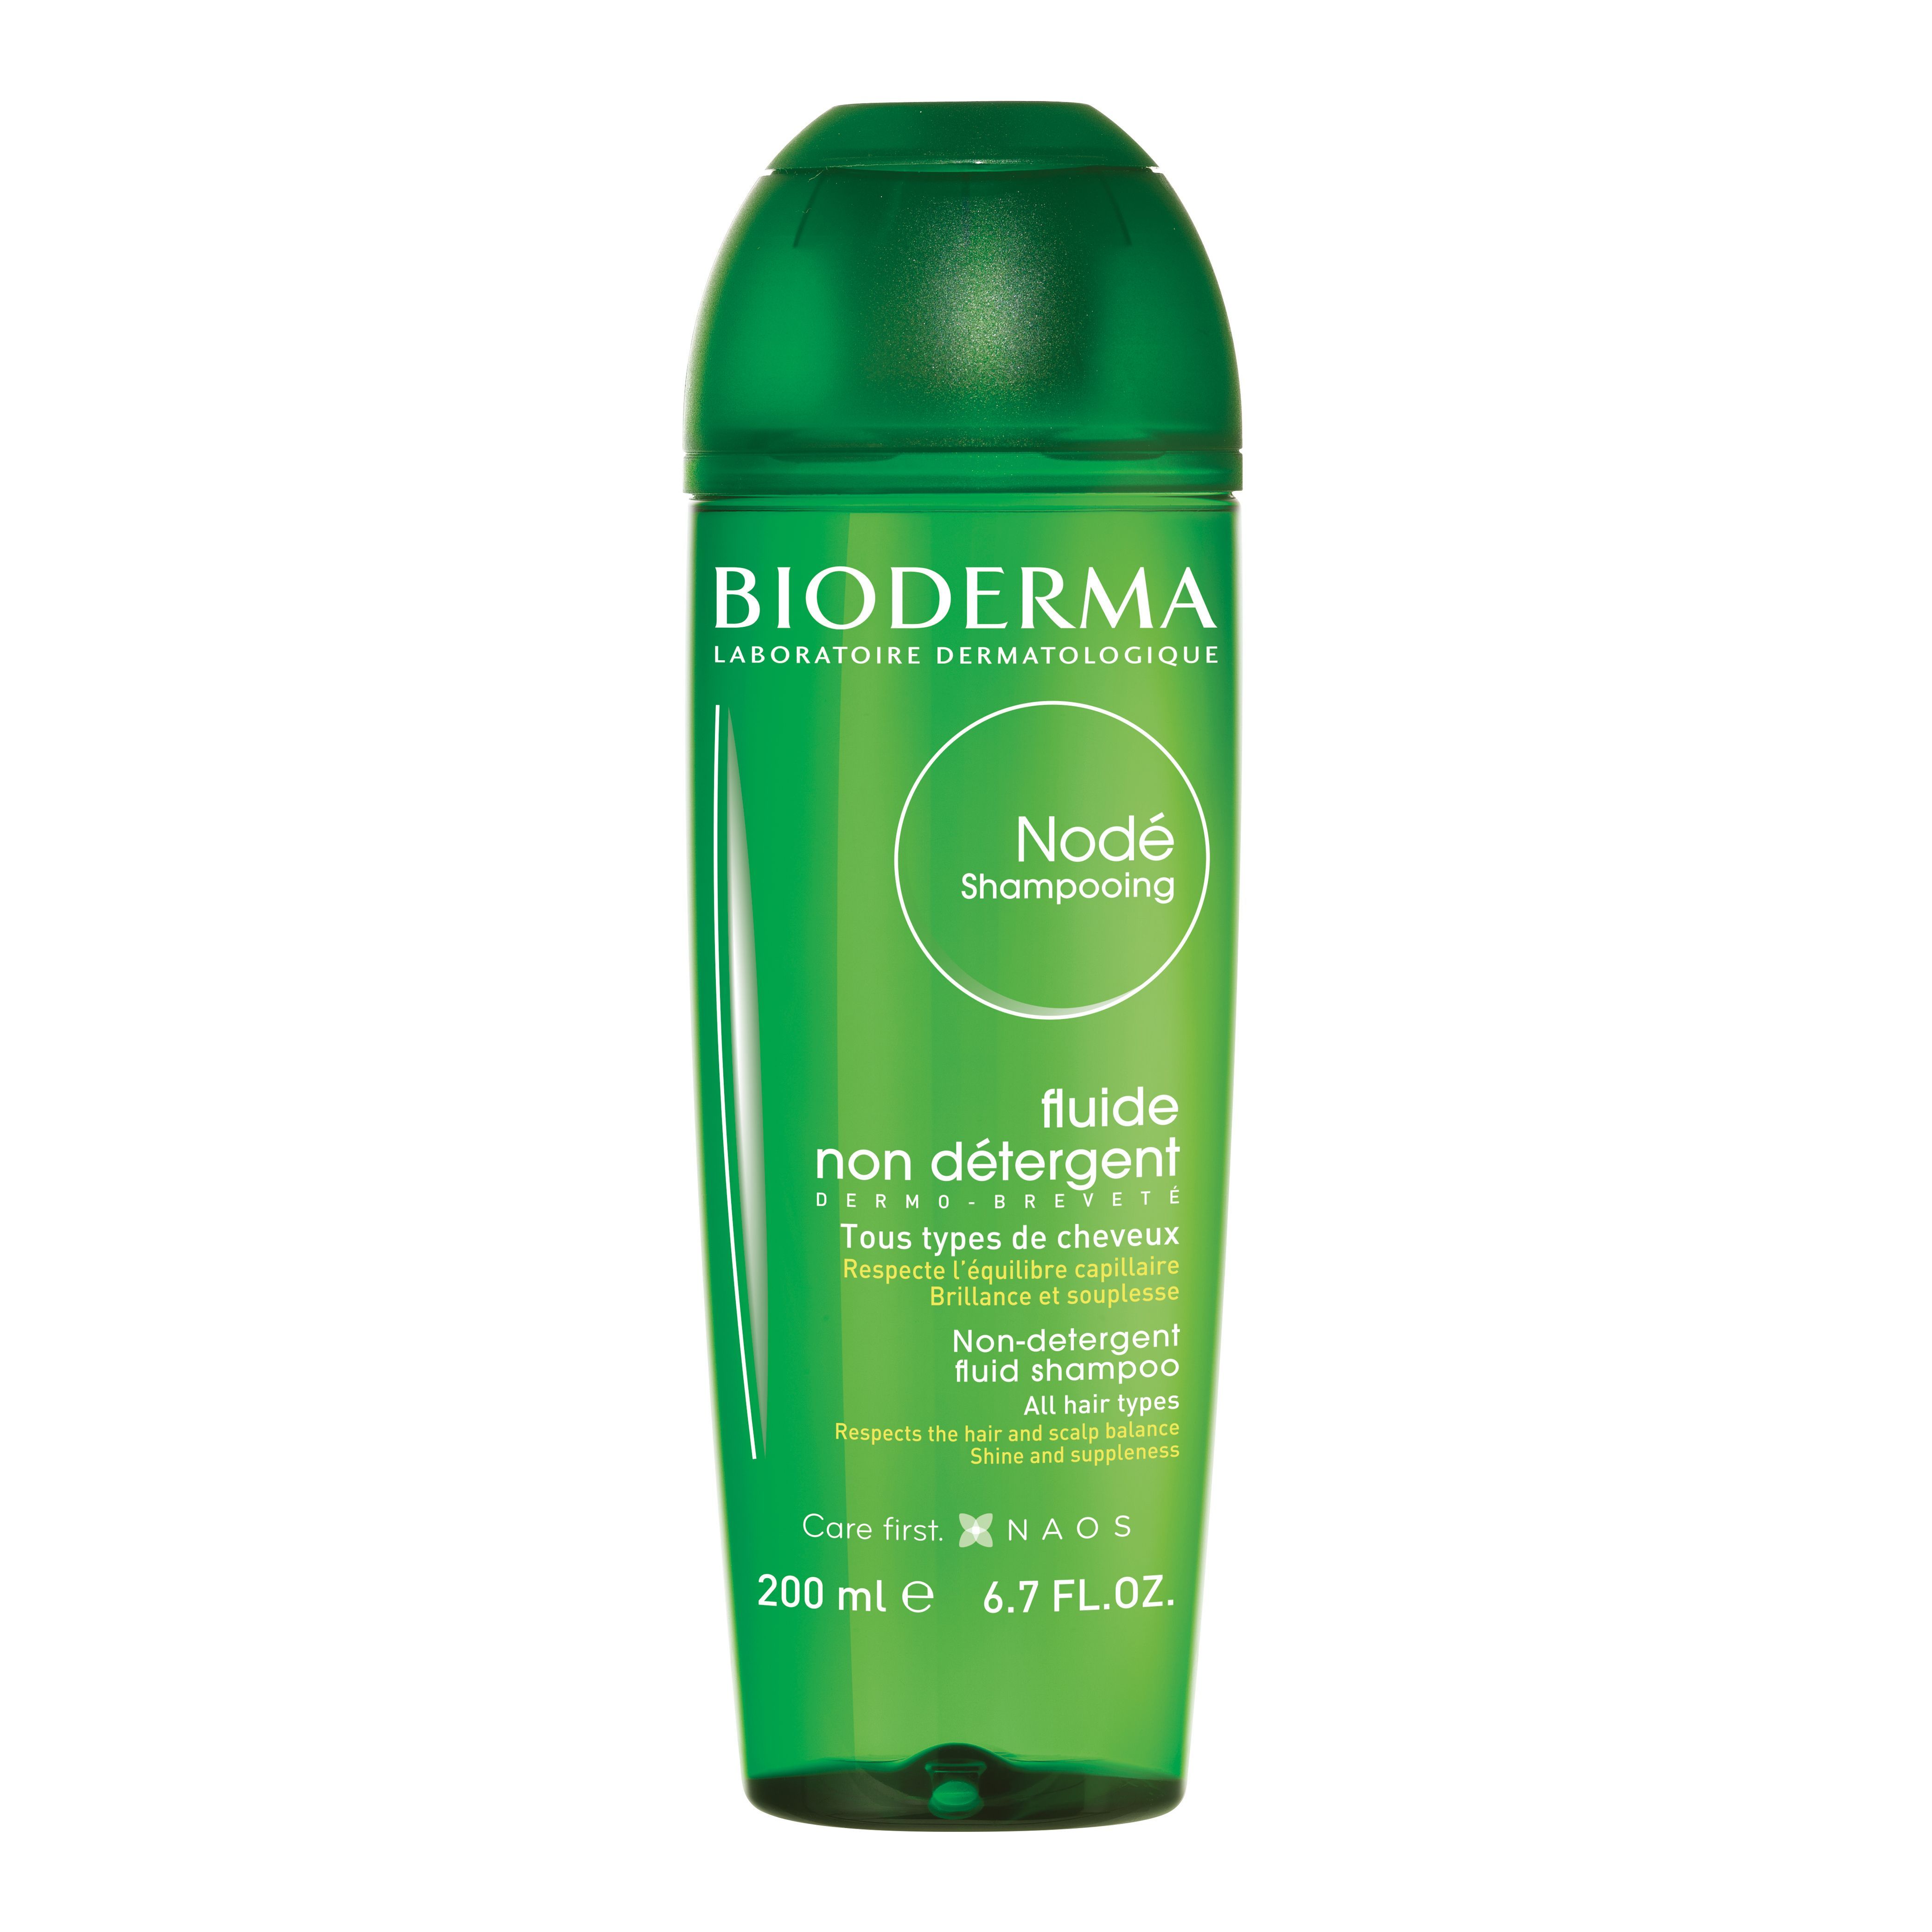 BIODERMA Nodé Shampooing fluide Mildes Shampoo